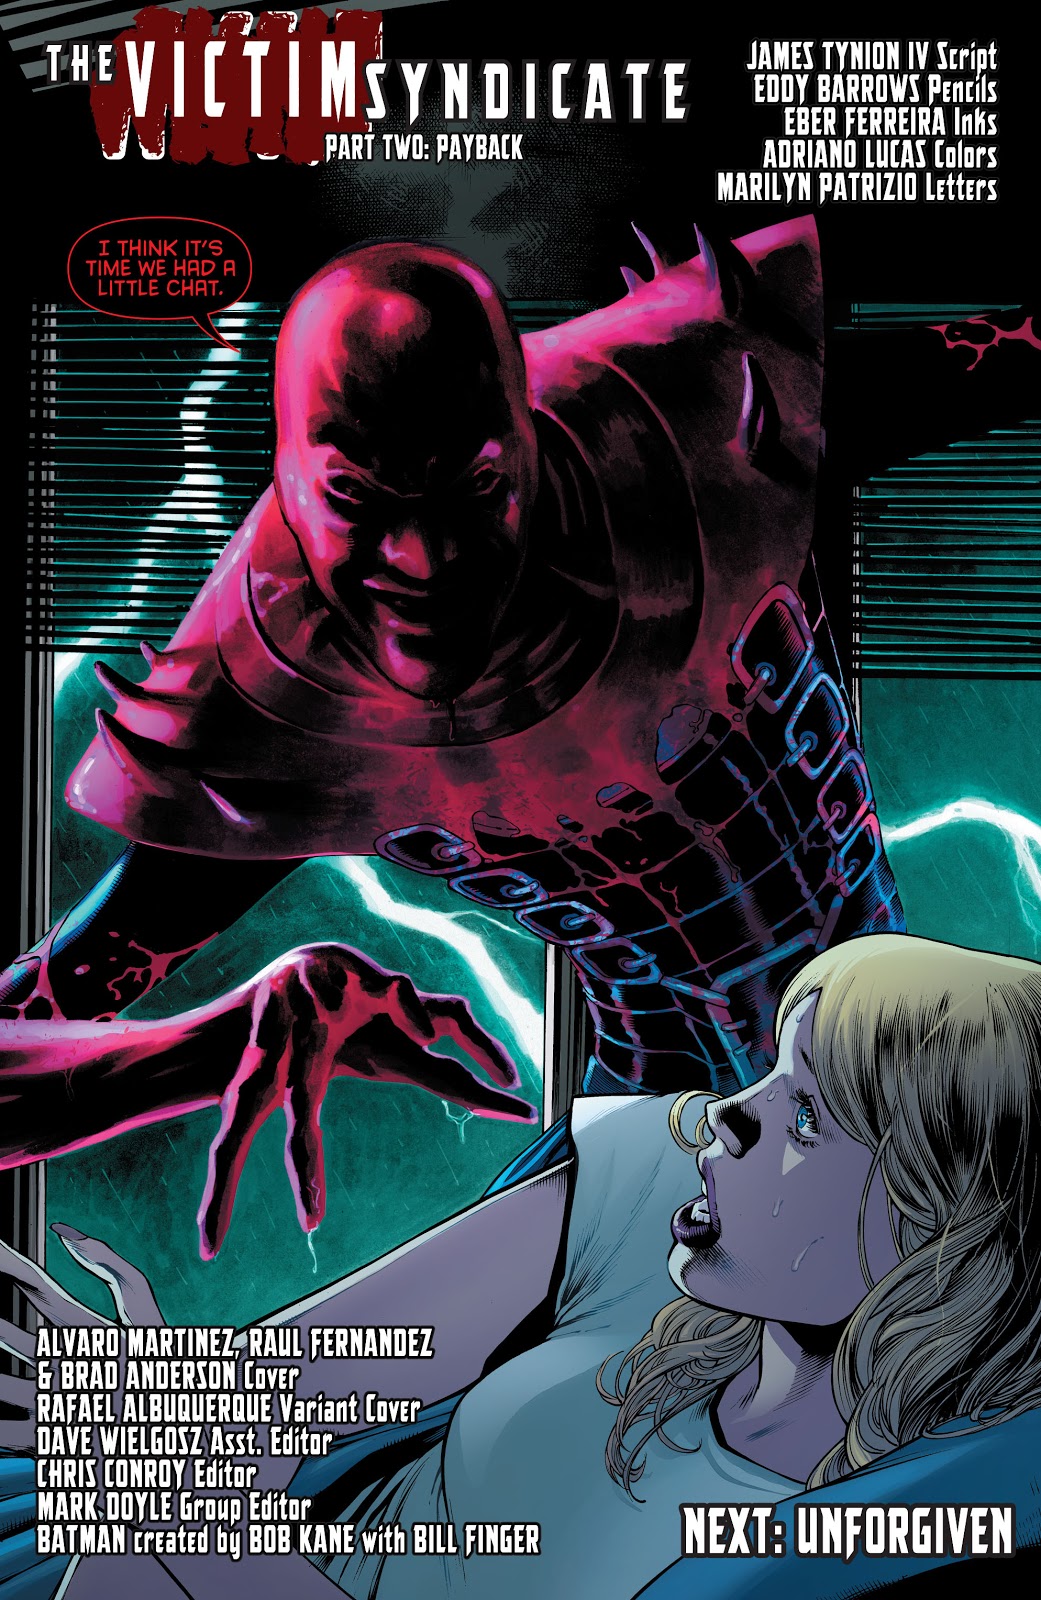 The First Victim (Detective Comics Vol. 1 #944)